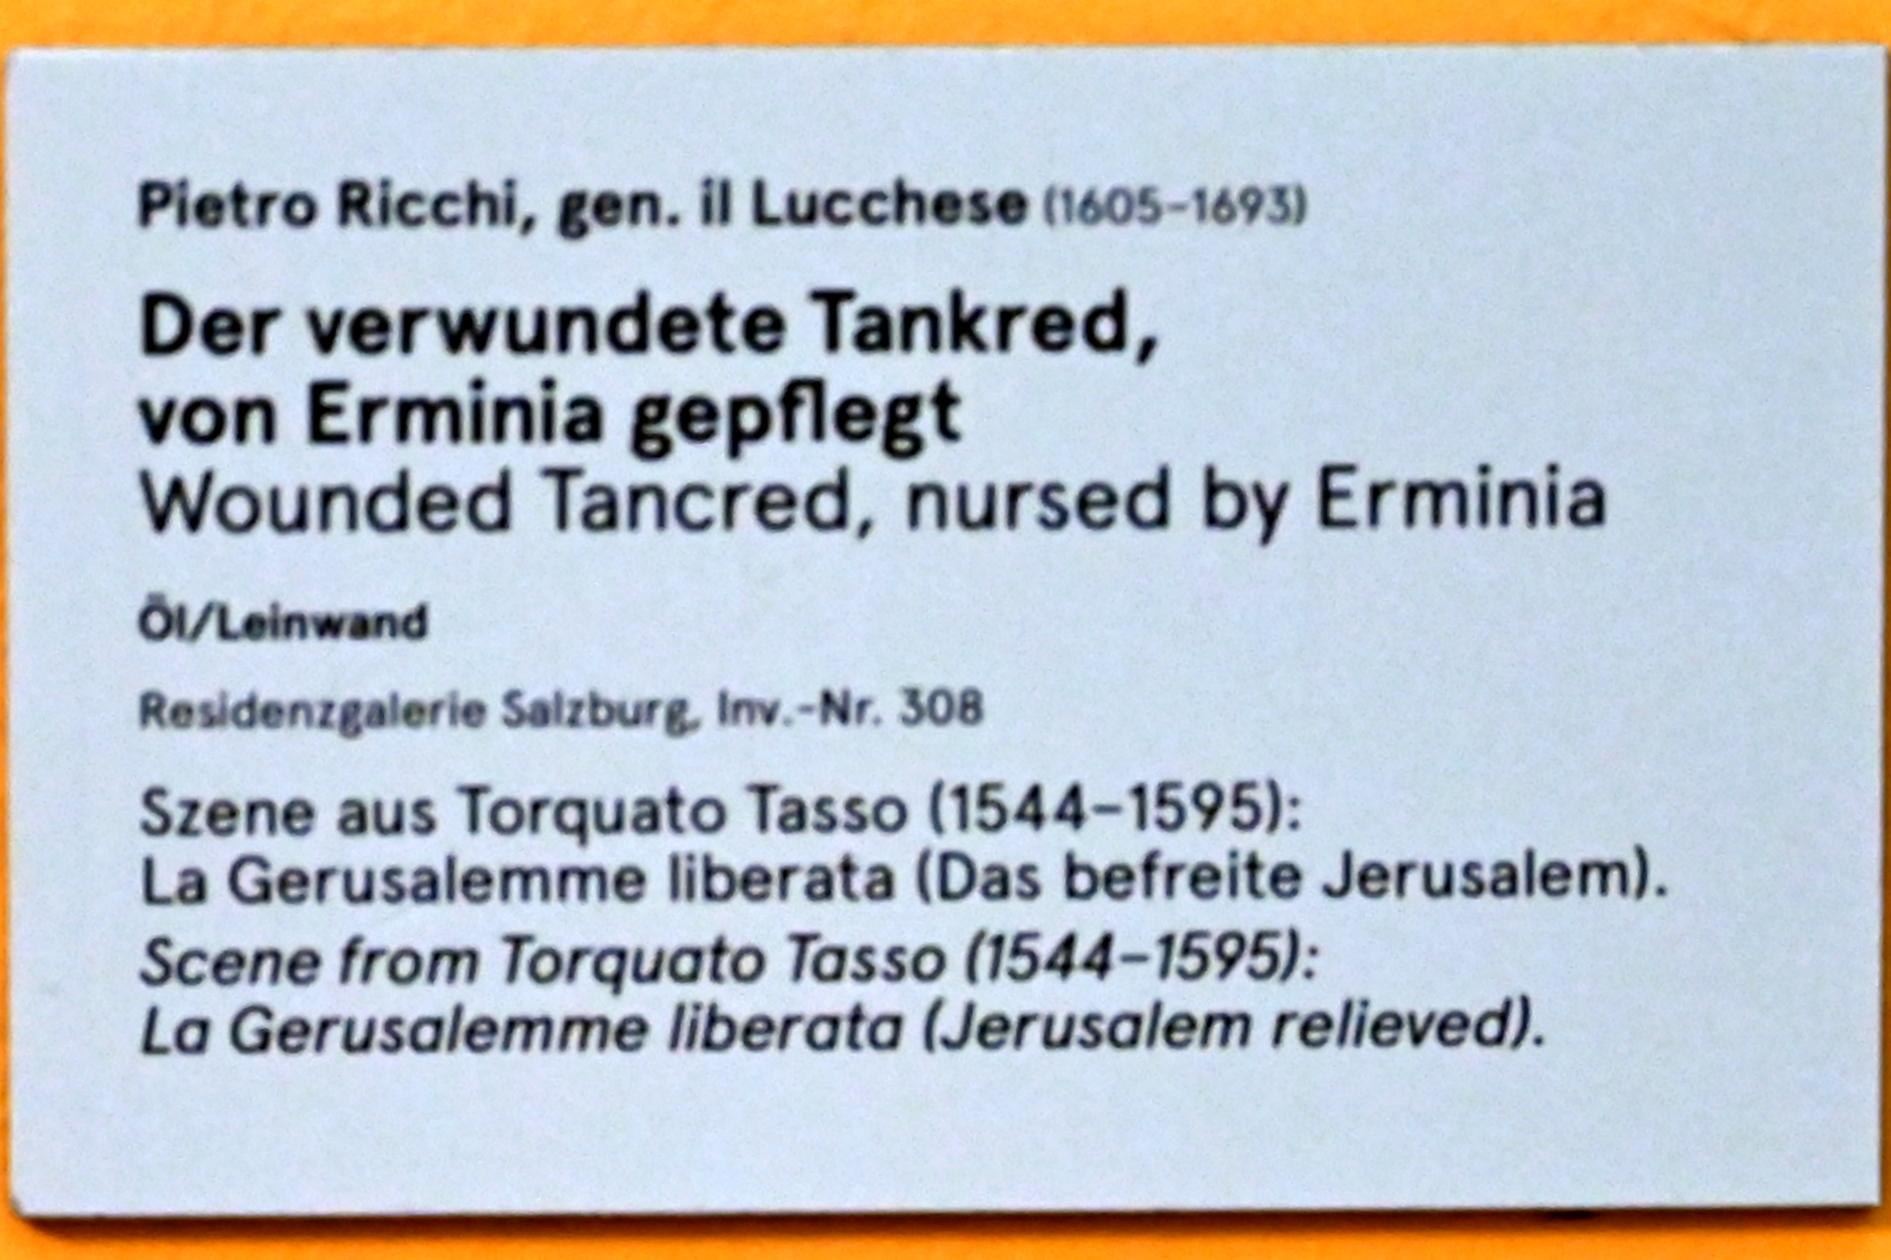 Pietro Ricchi (1662), Der verwundete Tankred, von Erminia gepflegt, Salzburg, Salzburger Residenz, Residenzgalerie, Undatiert, Bild 3/3